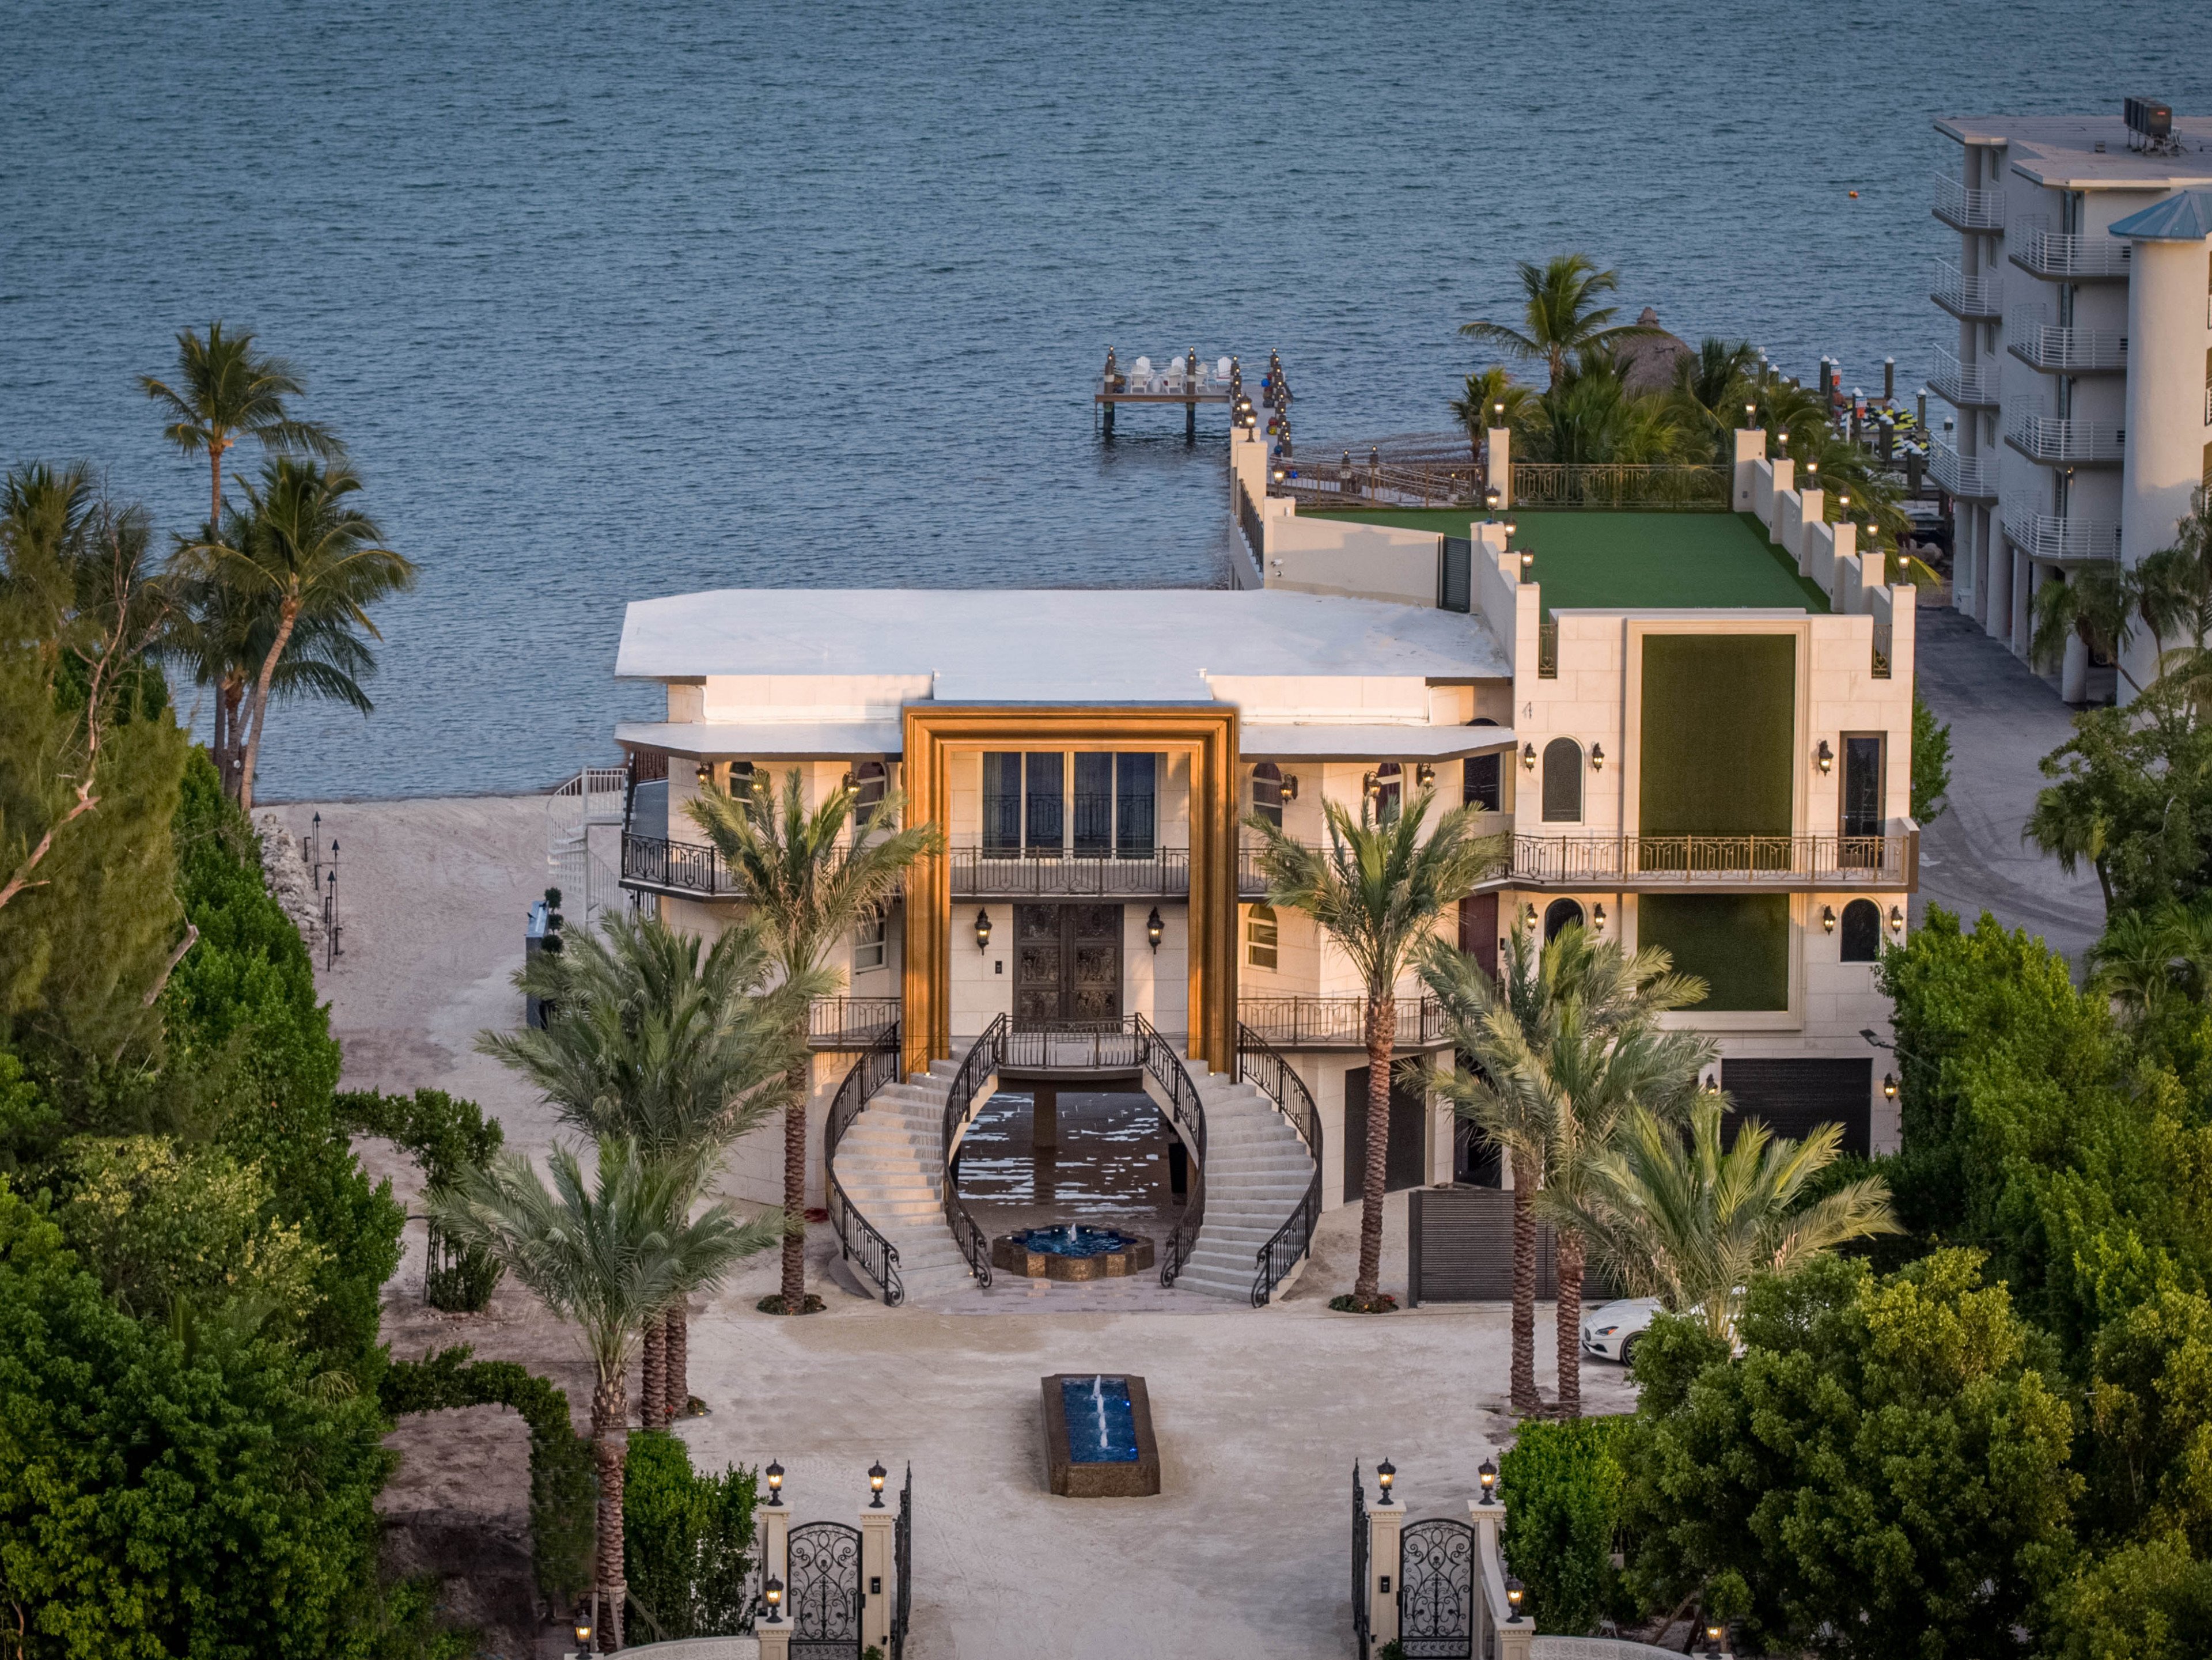 Islamorada 0 - Islamorada beachfront ocean villas